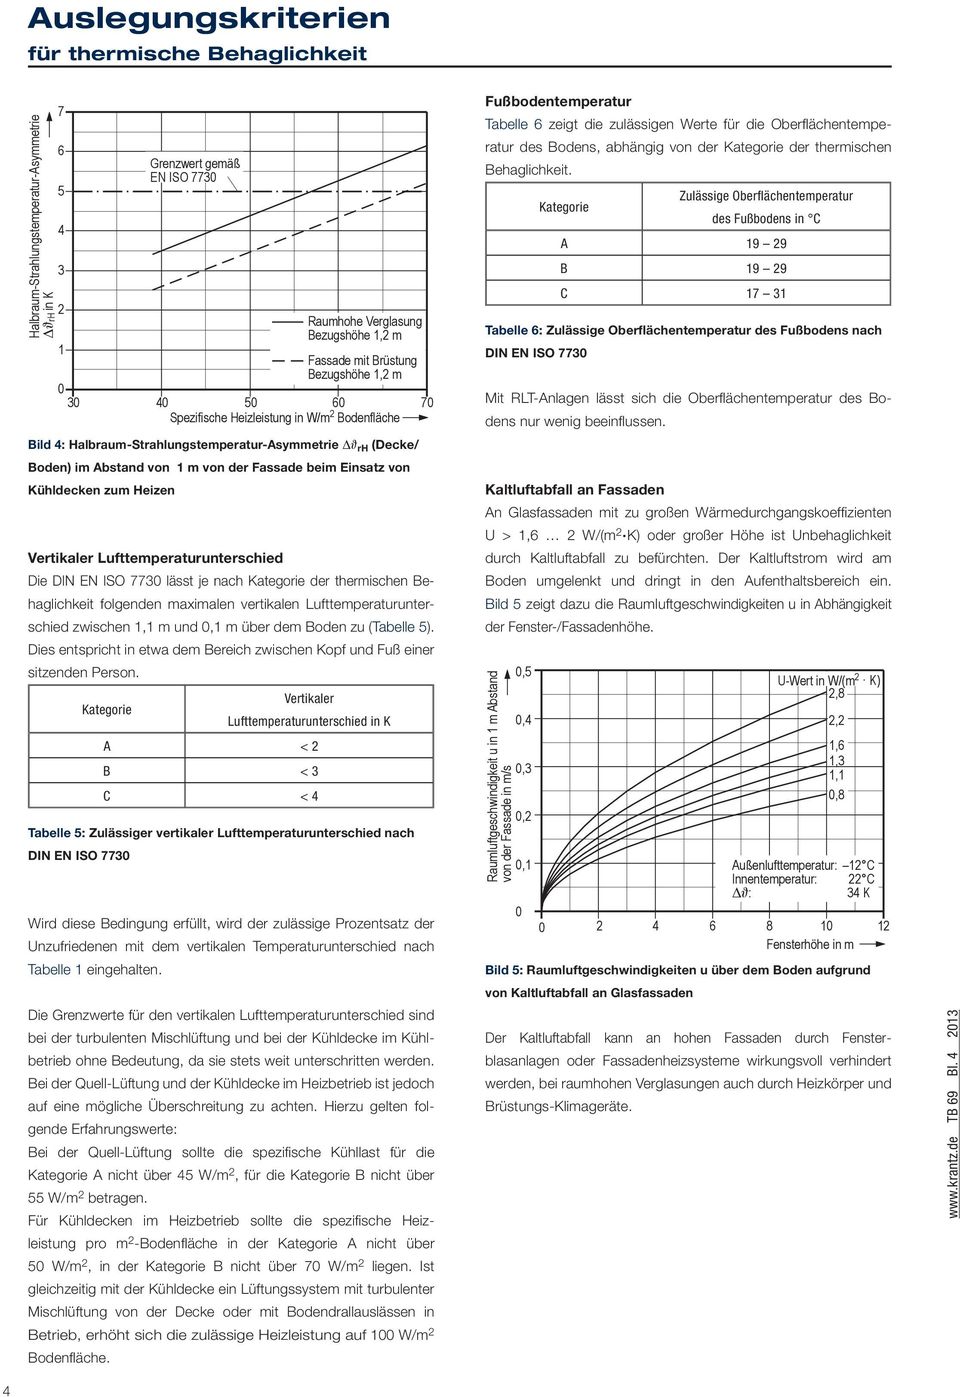 Lufttemperaturunterschied Die DIN EN ISO 773 lässt je nach der thermischen Behaglichkeit folgenden maximalen vertikalen Lufttemperaturunterschied zwischen 1,1 m und,1 m über dem Boden zu (Tabelle 5).